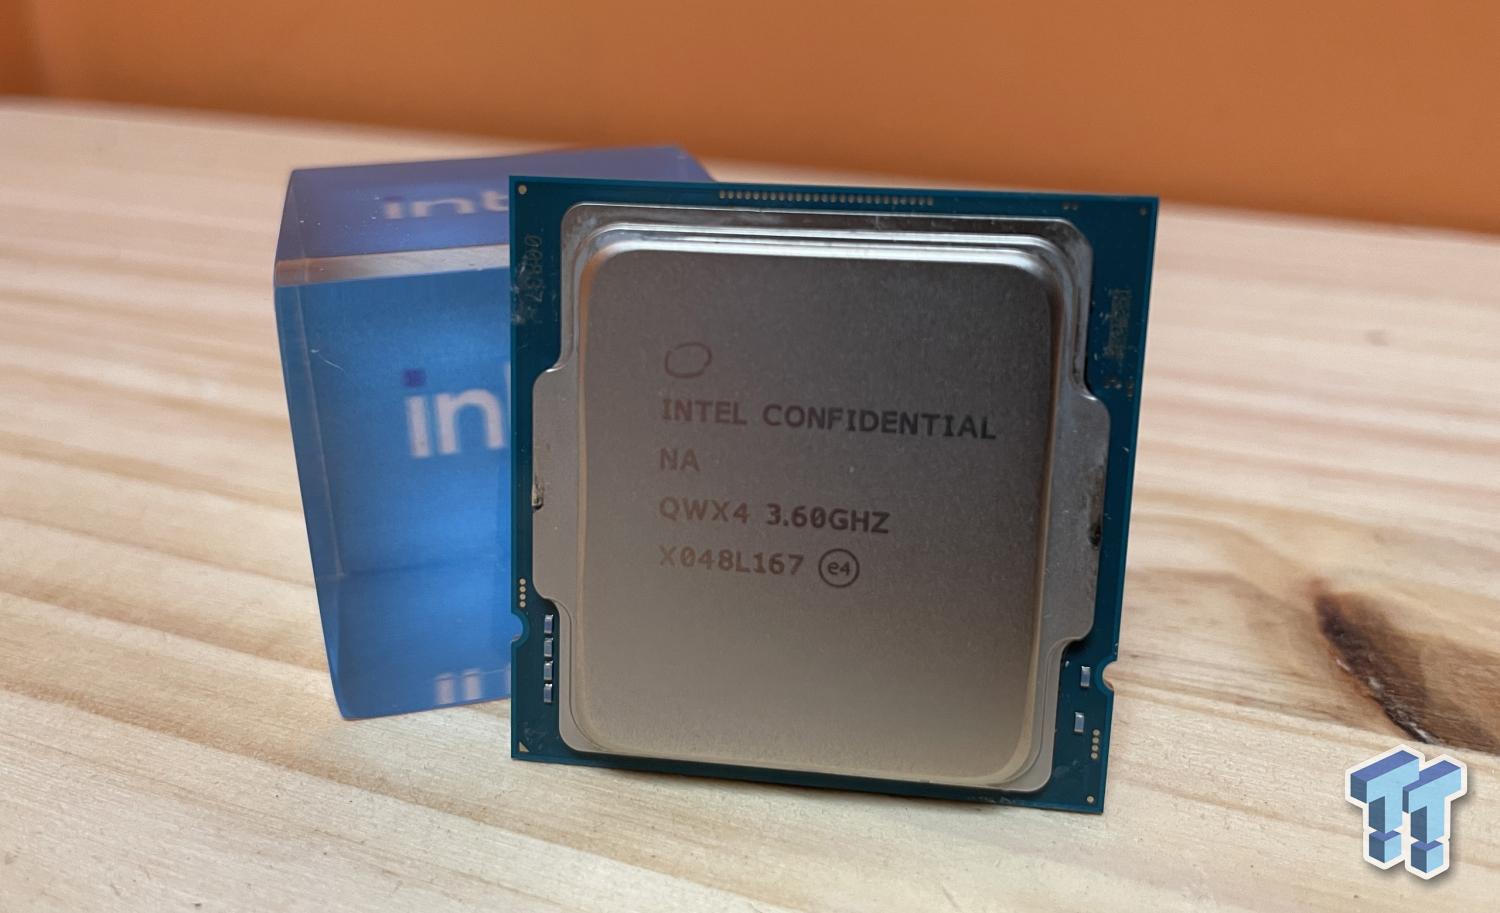 Intel Core i7 11700K, 8 Cores 5.0 GHz